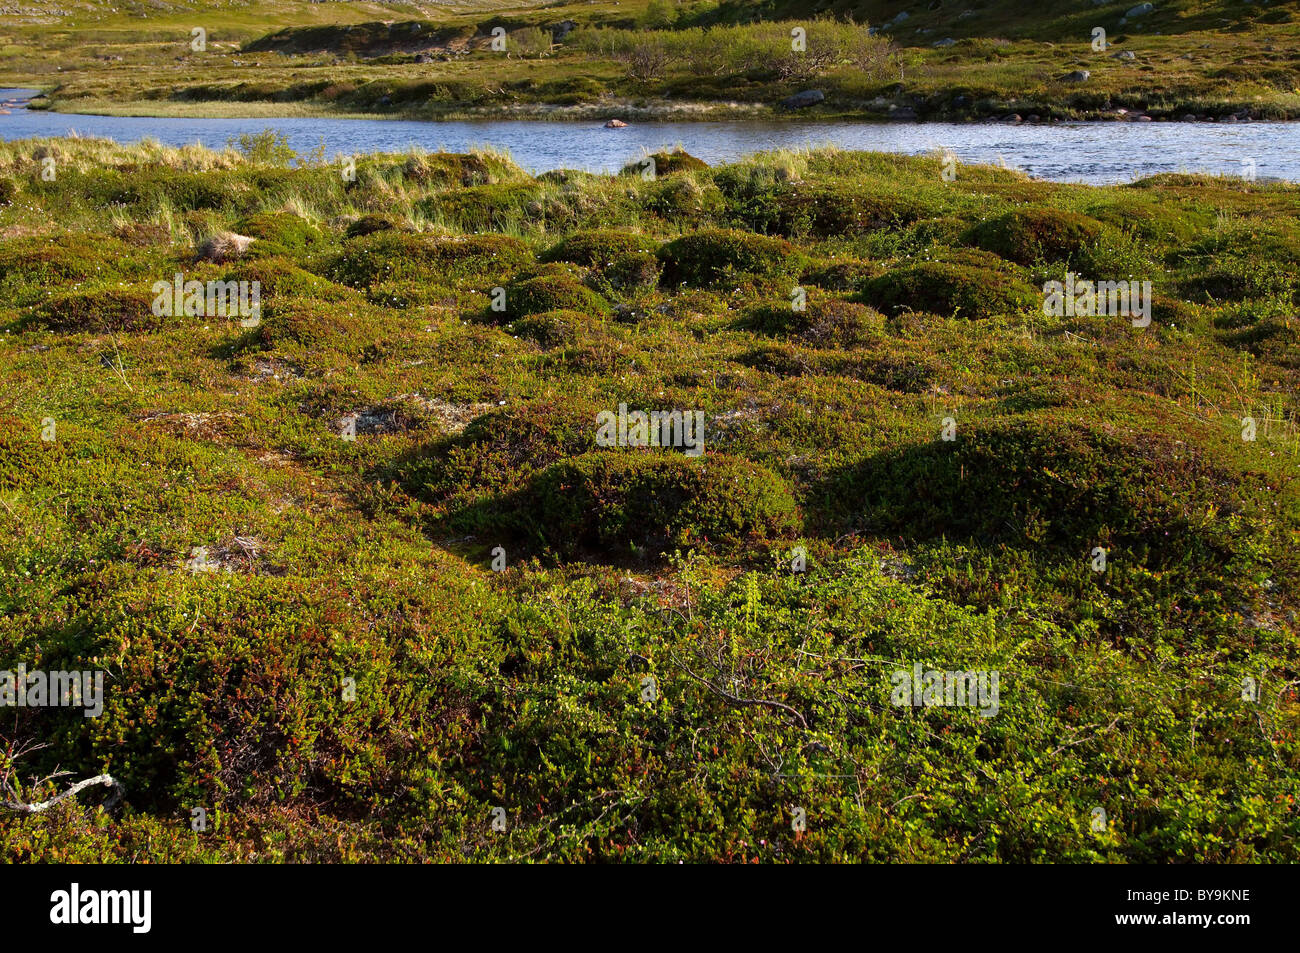 Querformat Barentssee, Arktis, Russland Stockfoto